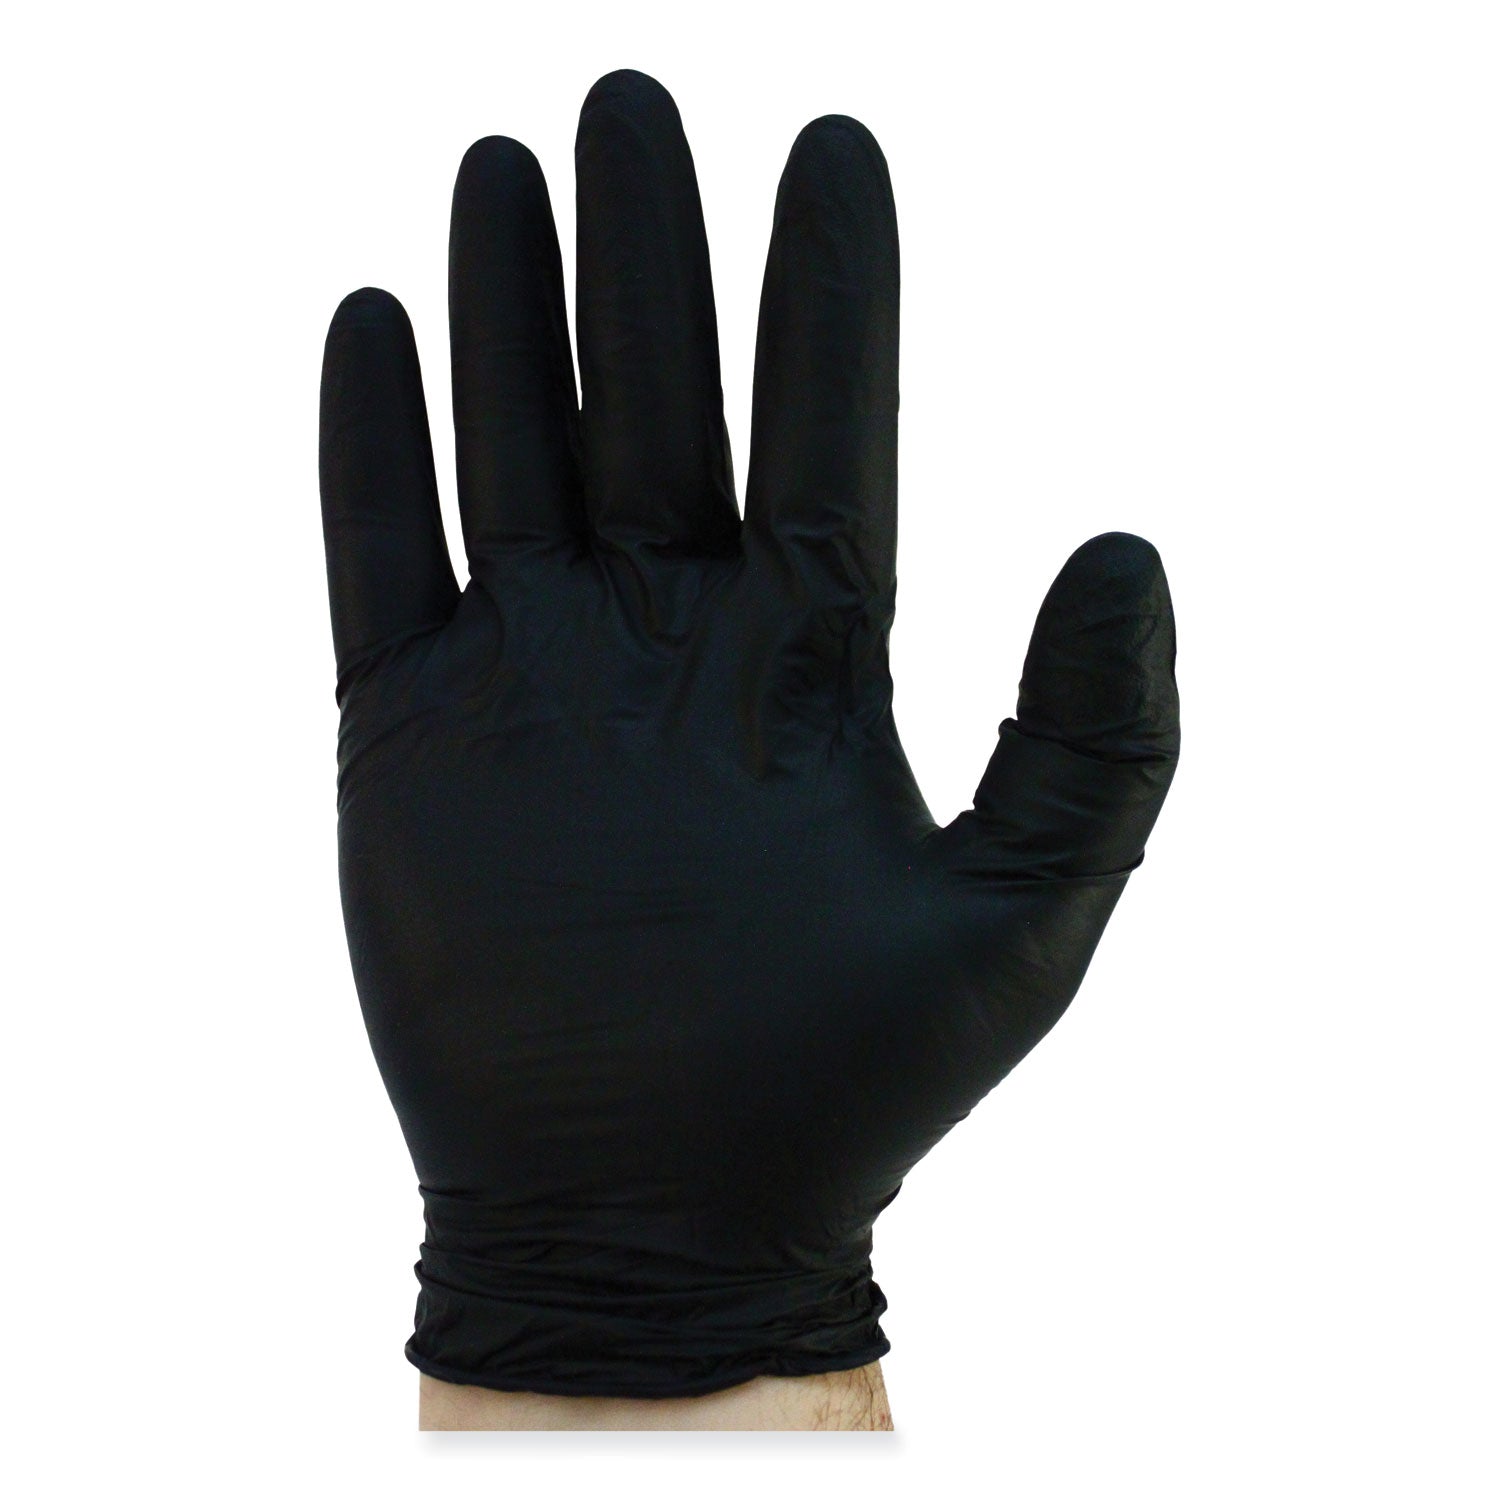 proguard-powder-free-nitrile-gloves-large-black-100-box_szngnprlgbk - 3